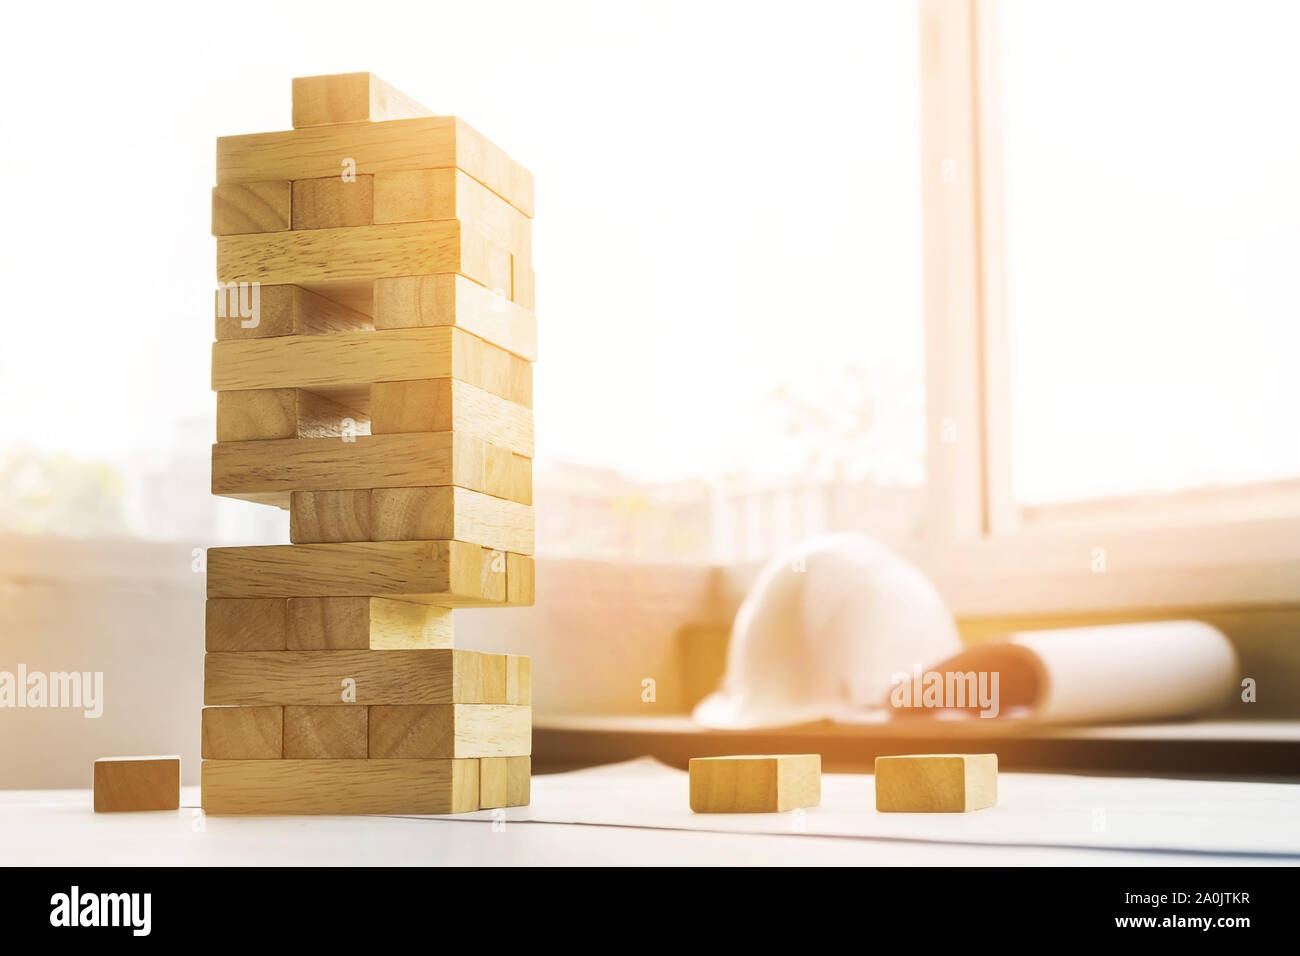 die Blöcke Holz tower Spiel mit architektonischen Ingenieur Pläne oder Blaupausen Kompasse, Stifte und Lineal auf Holztisch, Plan und Gebäudekonzept. Stockfoto